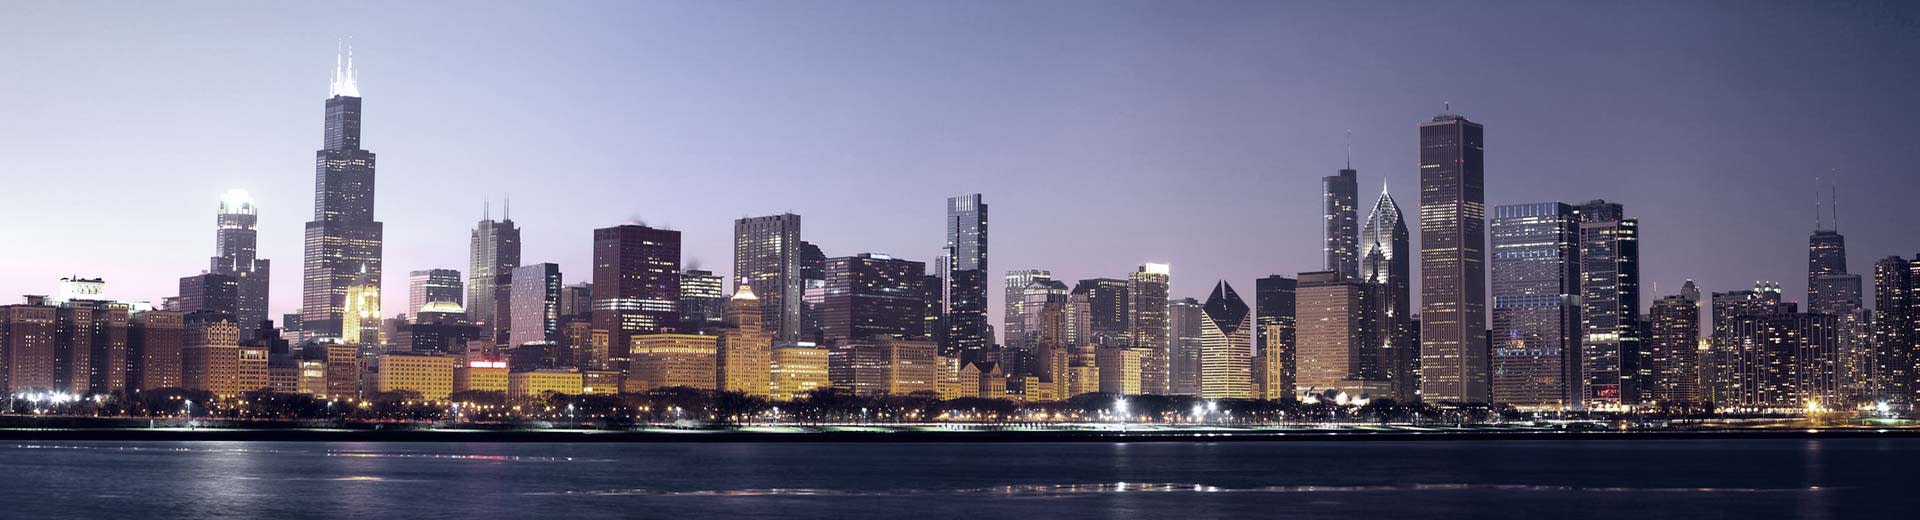 Die Skyline von Chicago beleuchtet den Himmel darüber, viele hohe Gebäude werden silhouettiert.